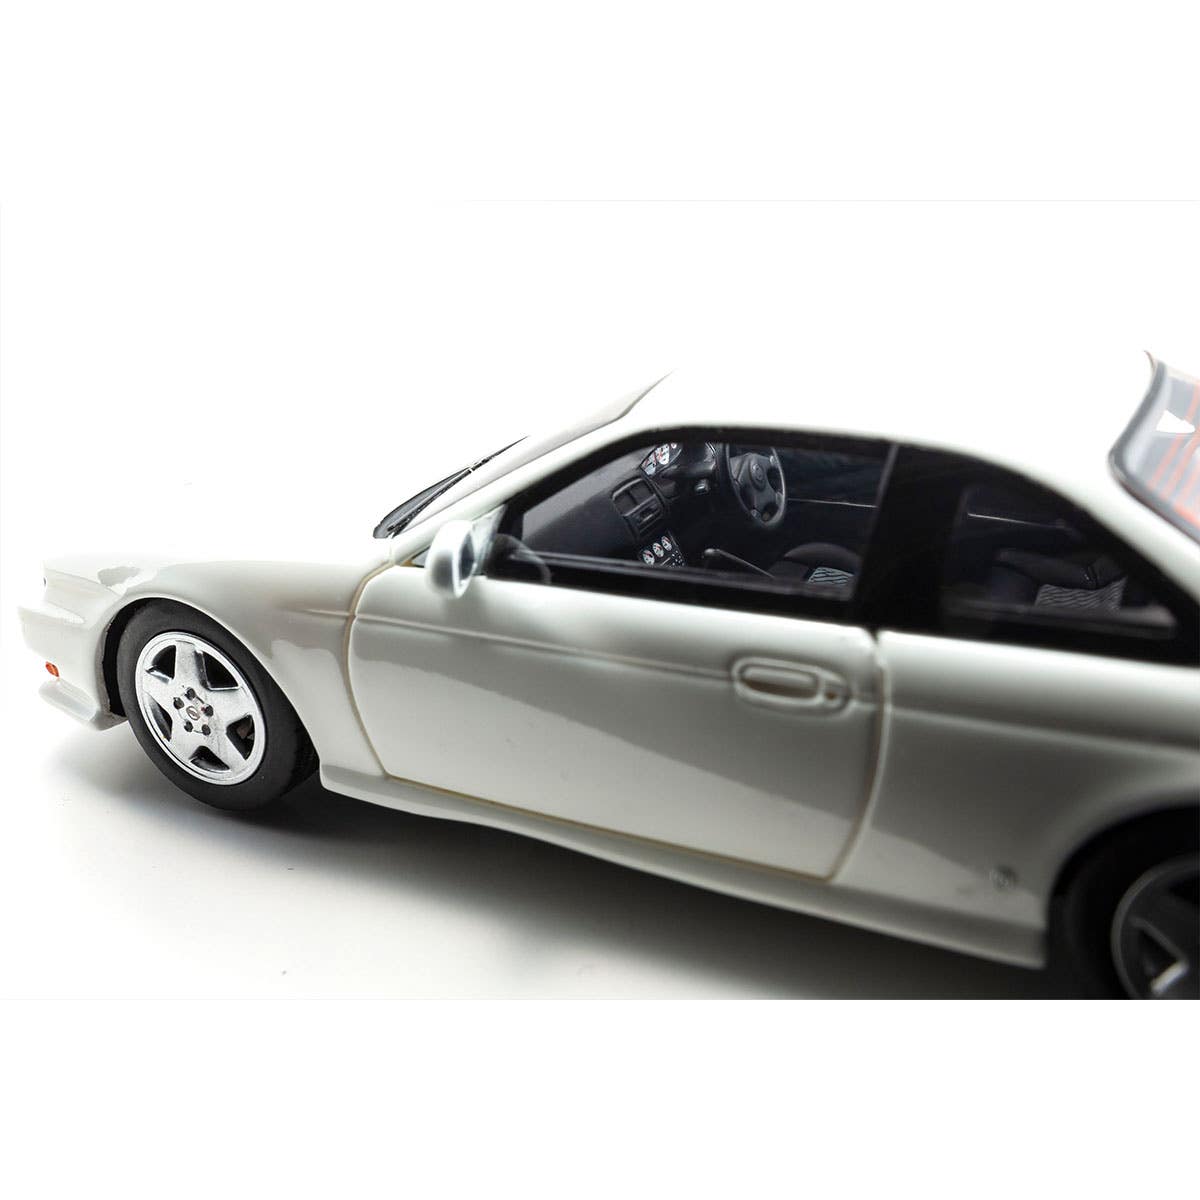 Nissan Silvia K's (S14) - White - 1:43 Scale Resin Model Car